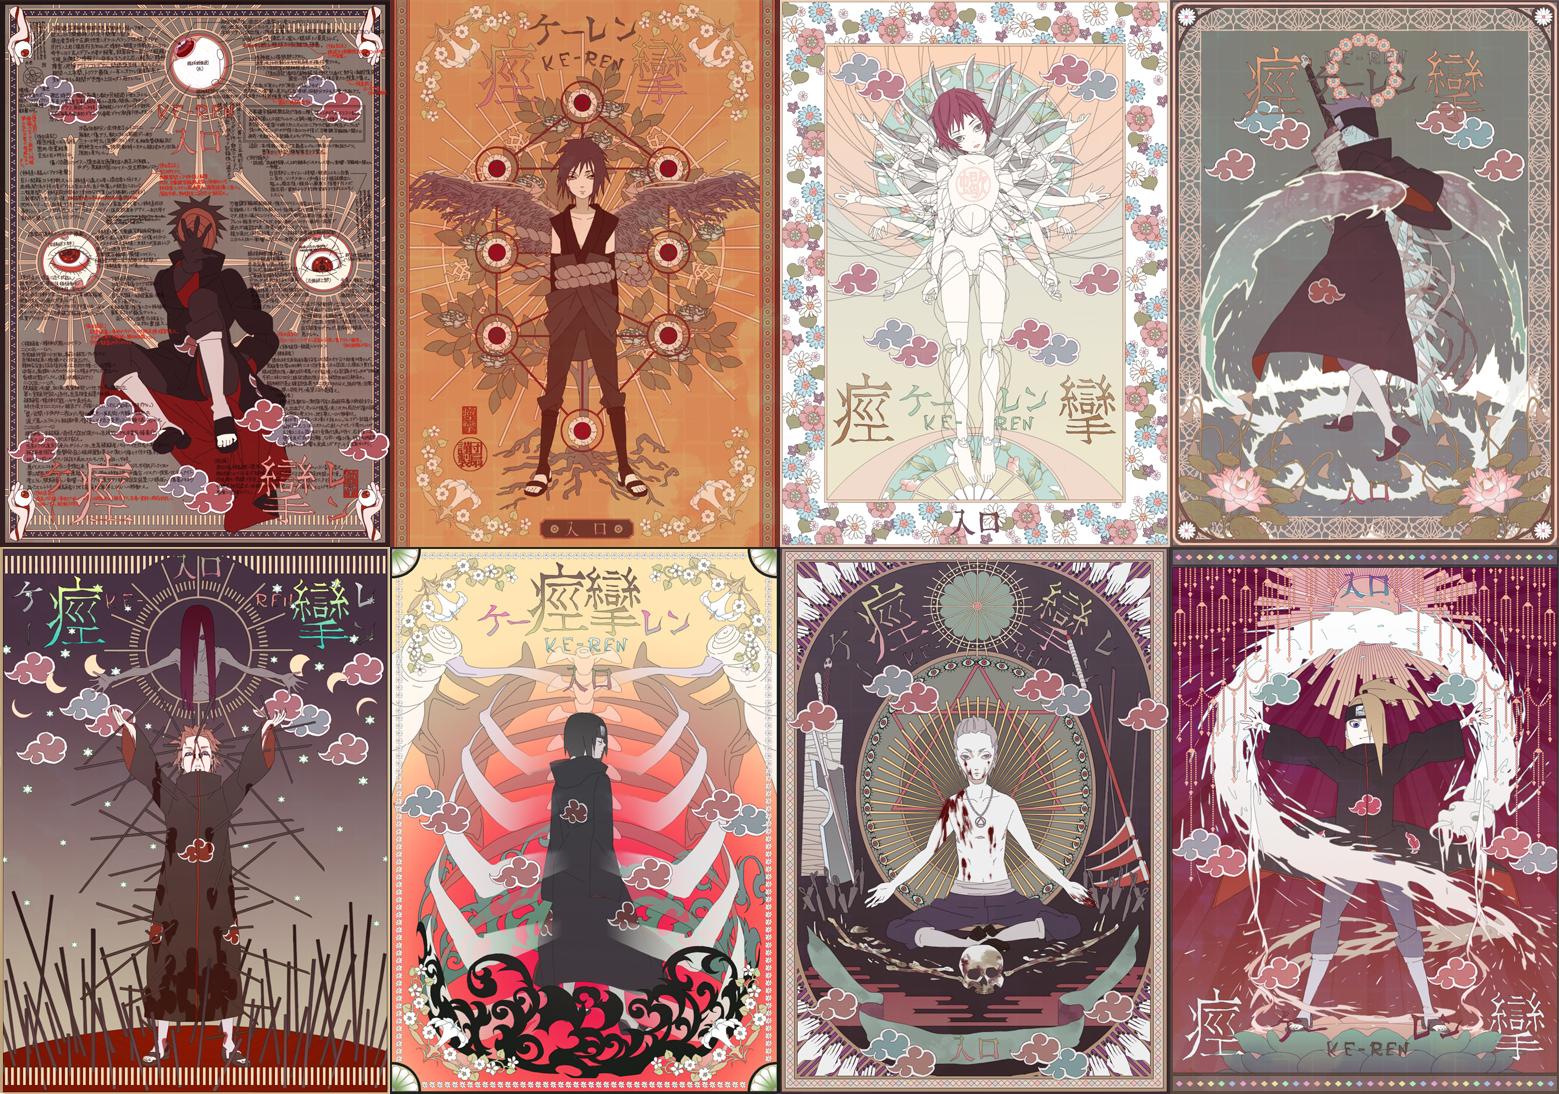 Kisame Hoshigaki iPhone wallpapers